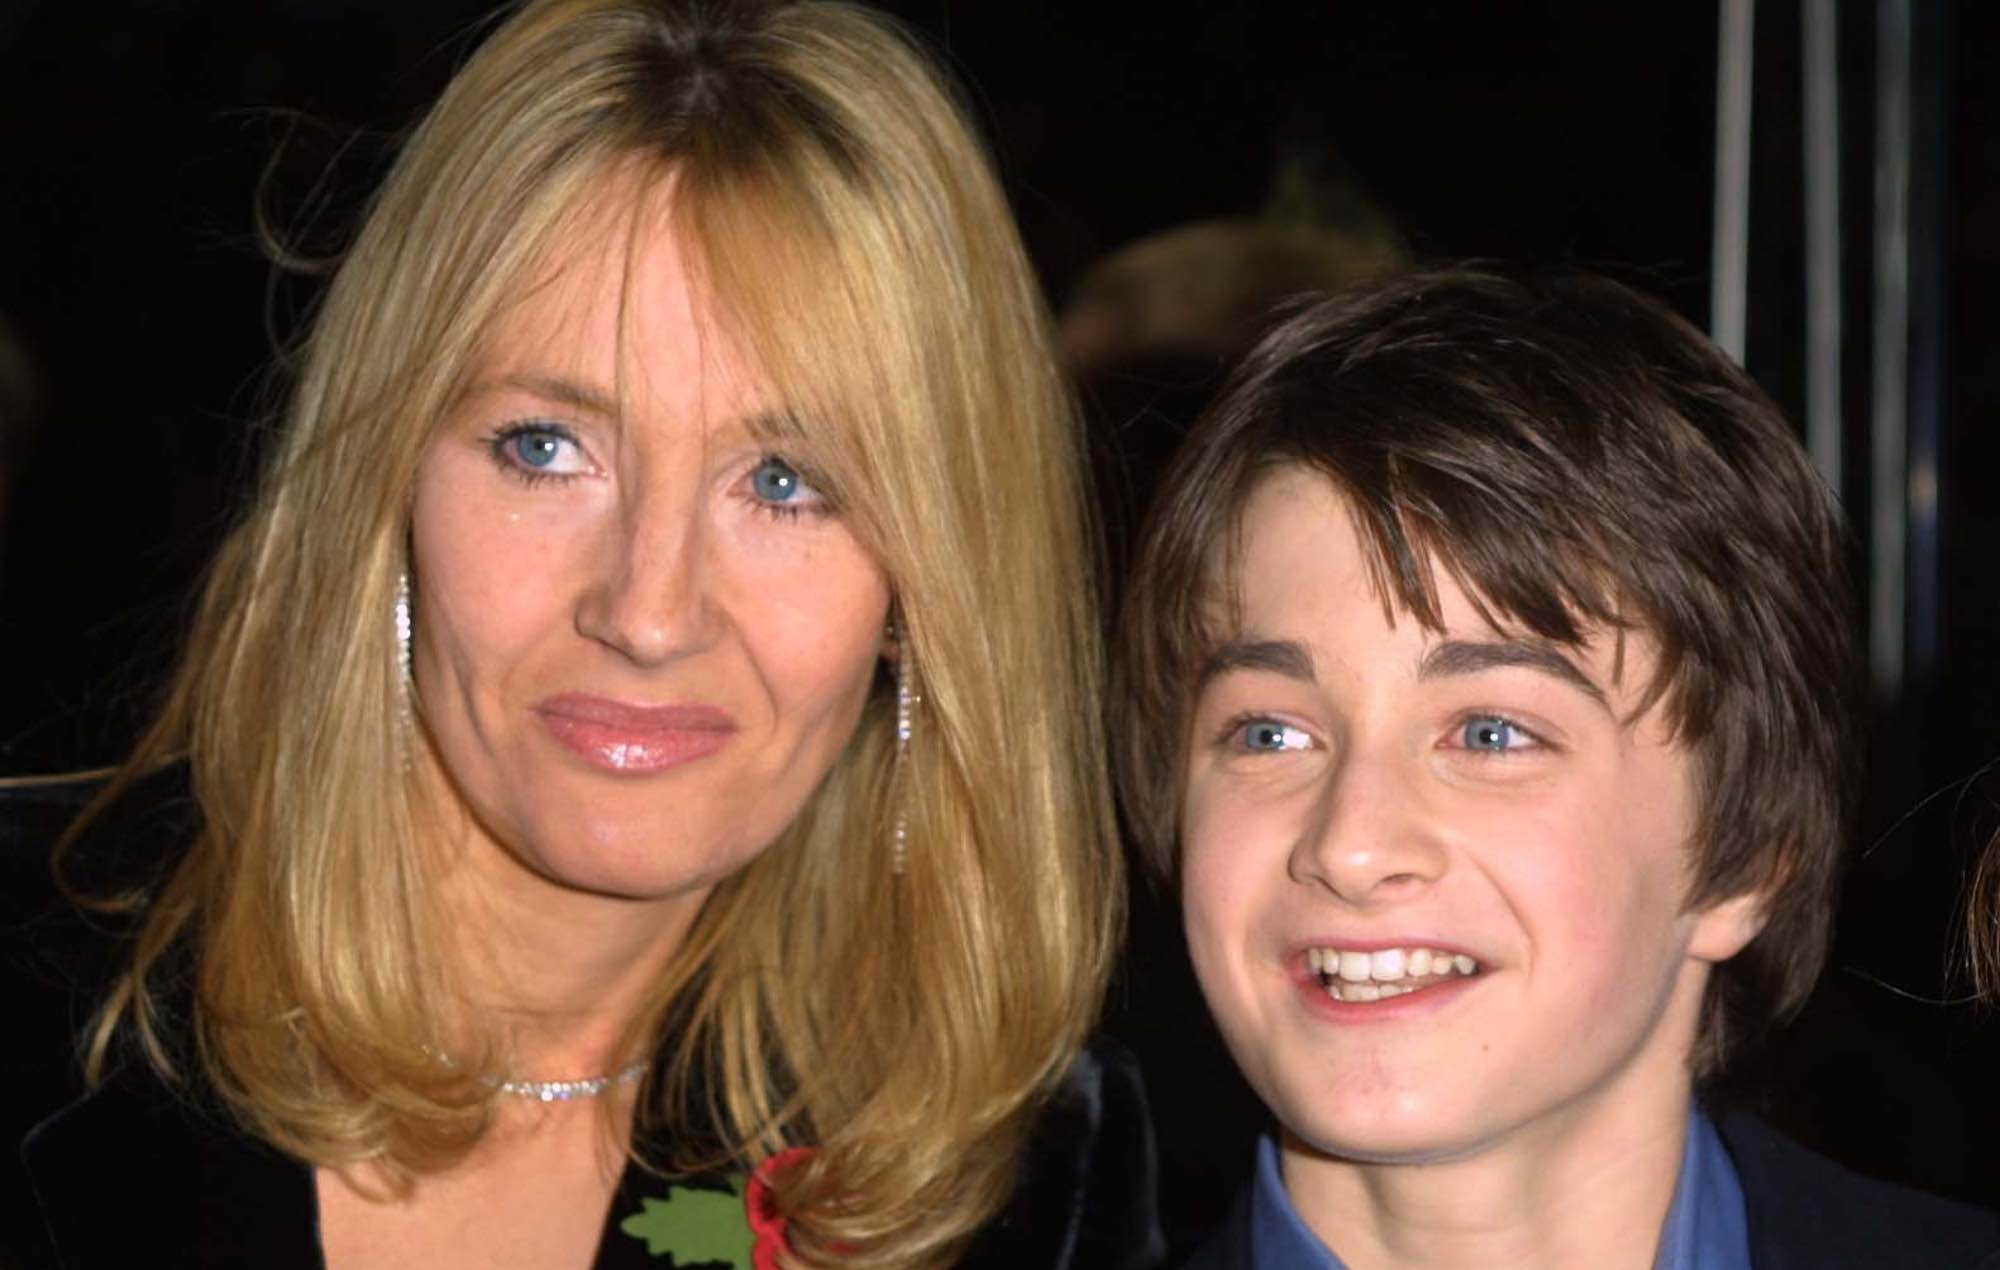 Daniel Radcliffe sobre la ruptura con JK Rowling: "Me pone muy triste"